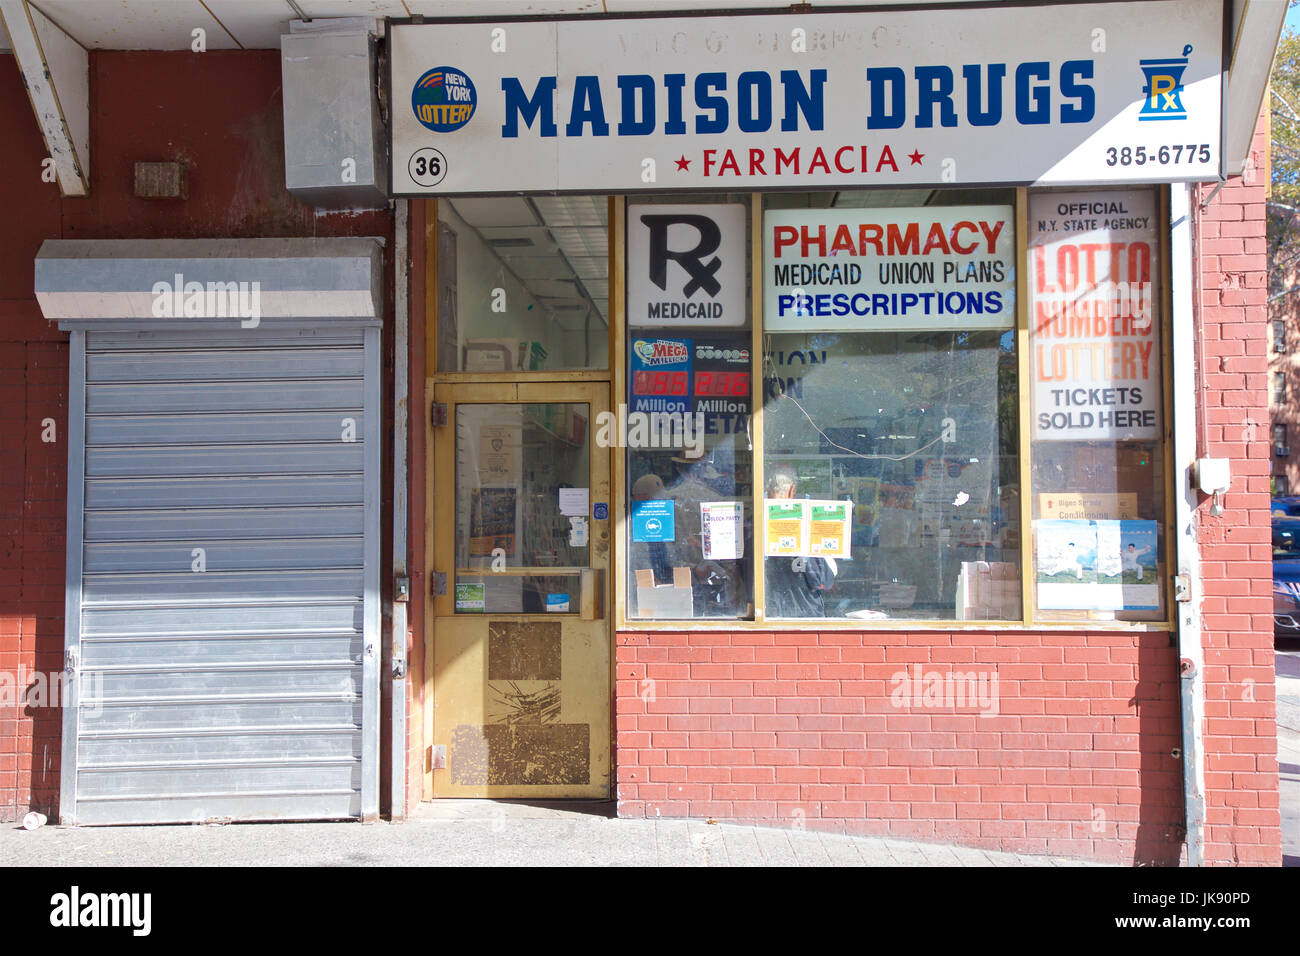 Pharmacy on Madison Street in New York, NY, USA. Stock Photo